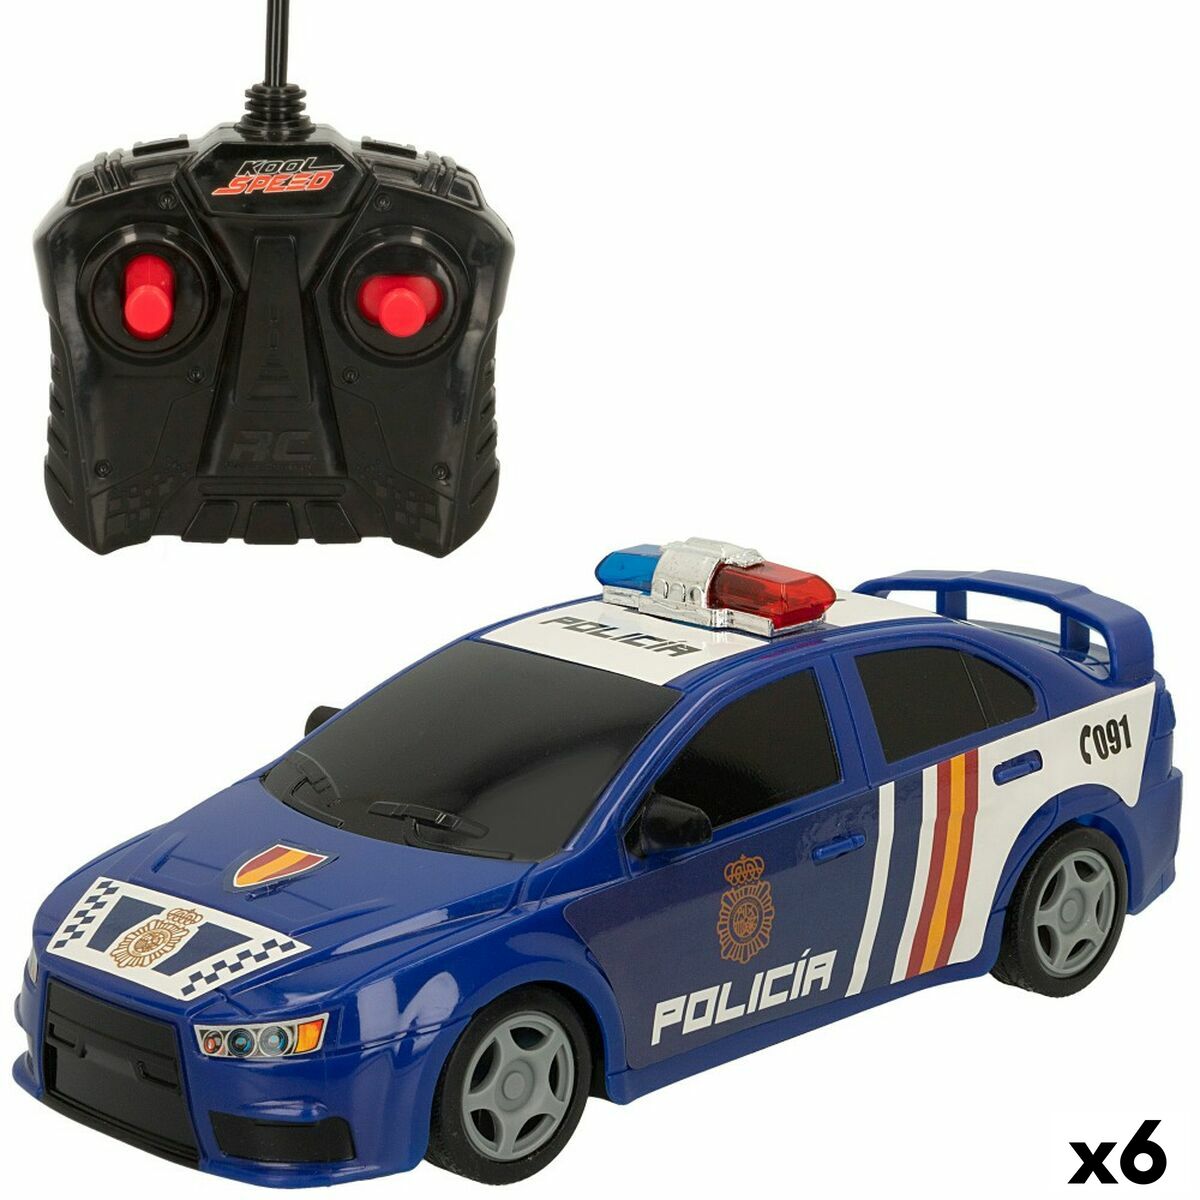 Fjärrkontroll Bil Speed & Go (6 antal)-Leksaker och spel, Fordon-Speed & Go-peaceofhome.se